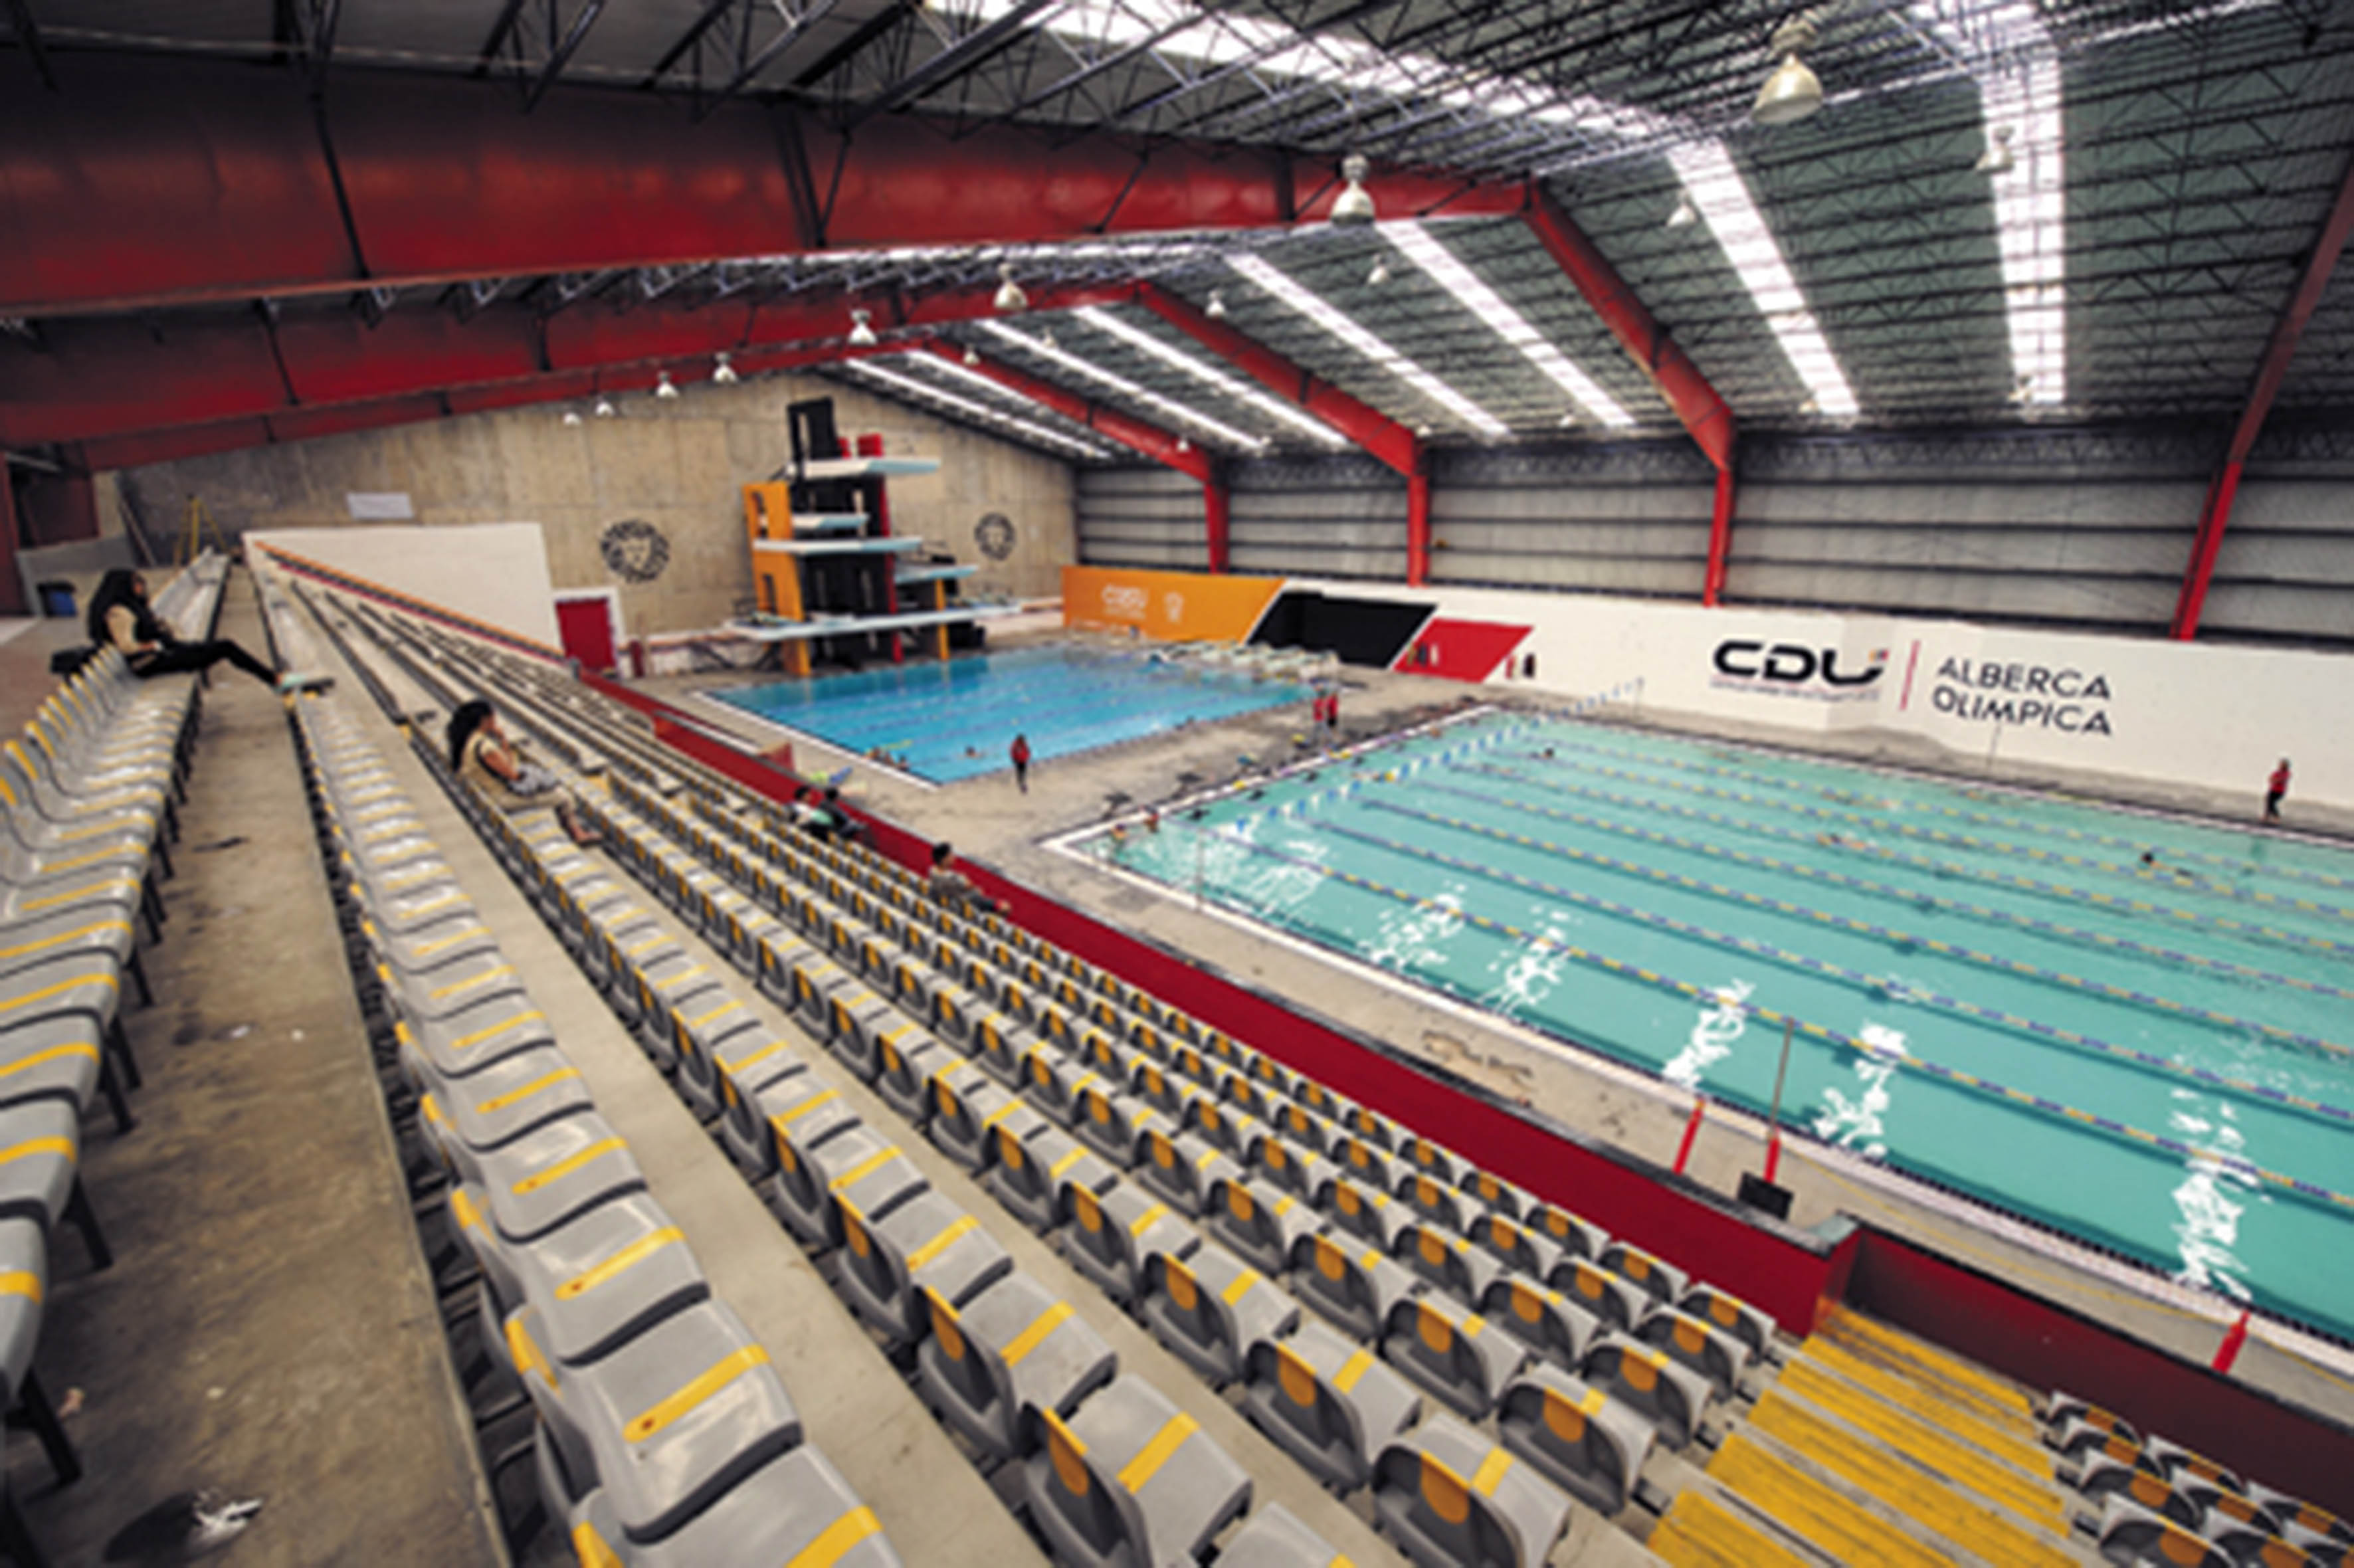 Ofrece alberca olímpica nuevas disciplinas | Universidad de Guadalajara